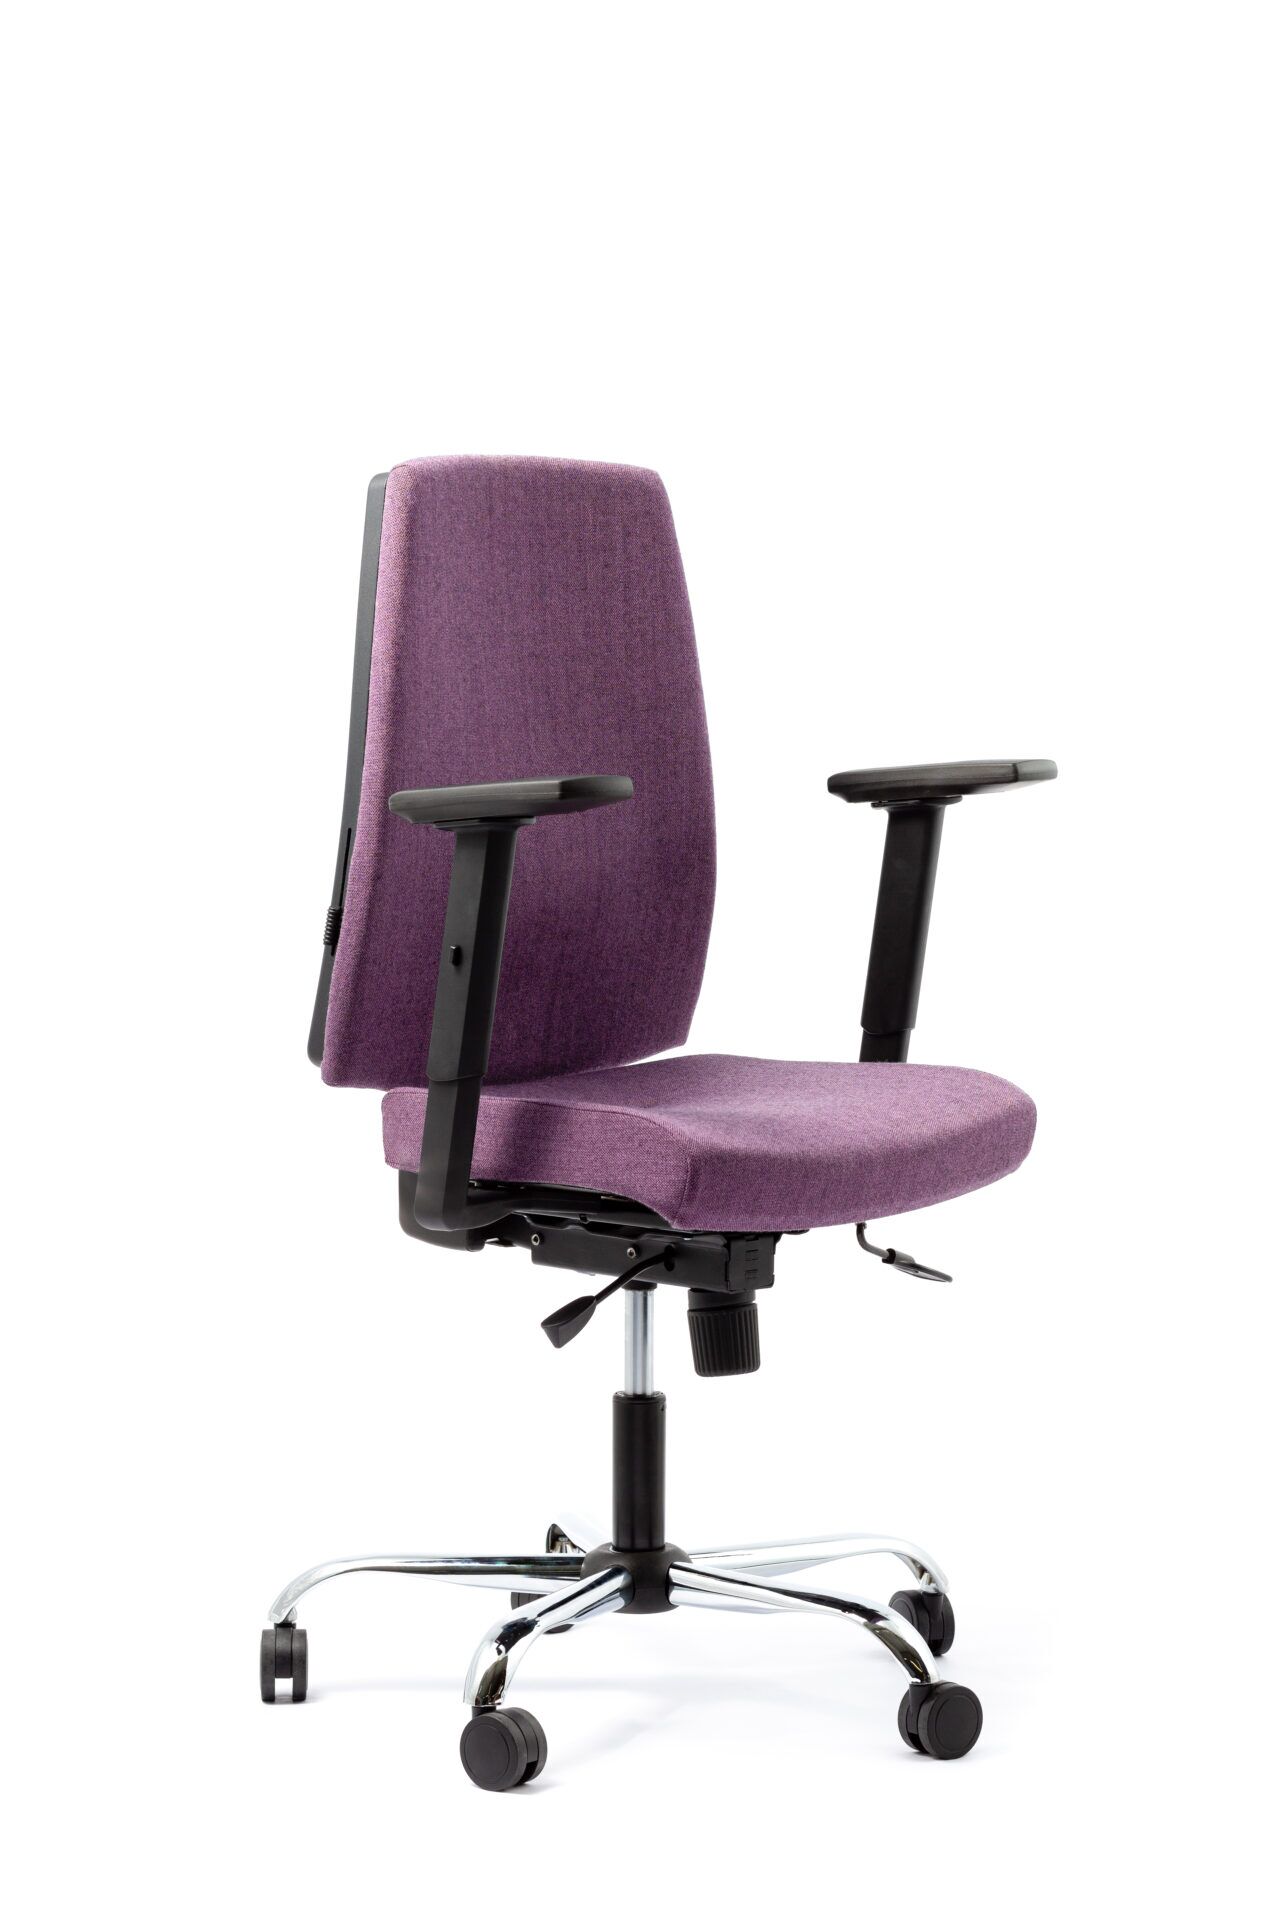 Fioletowy fotel biurowy - widoczny po skosie z przodu zdjęcie 7